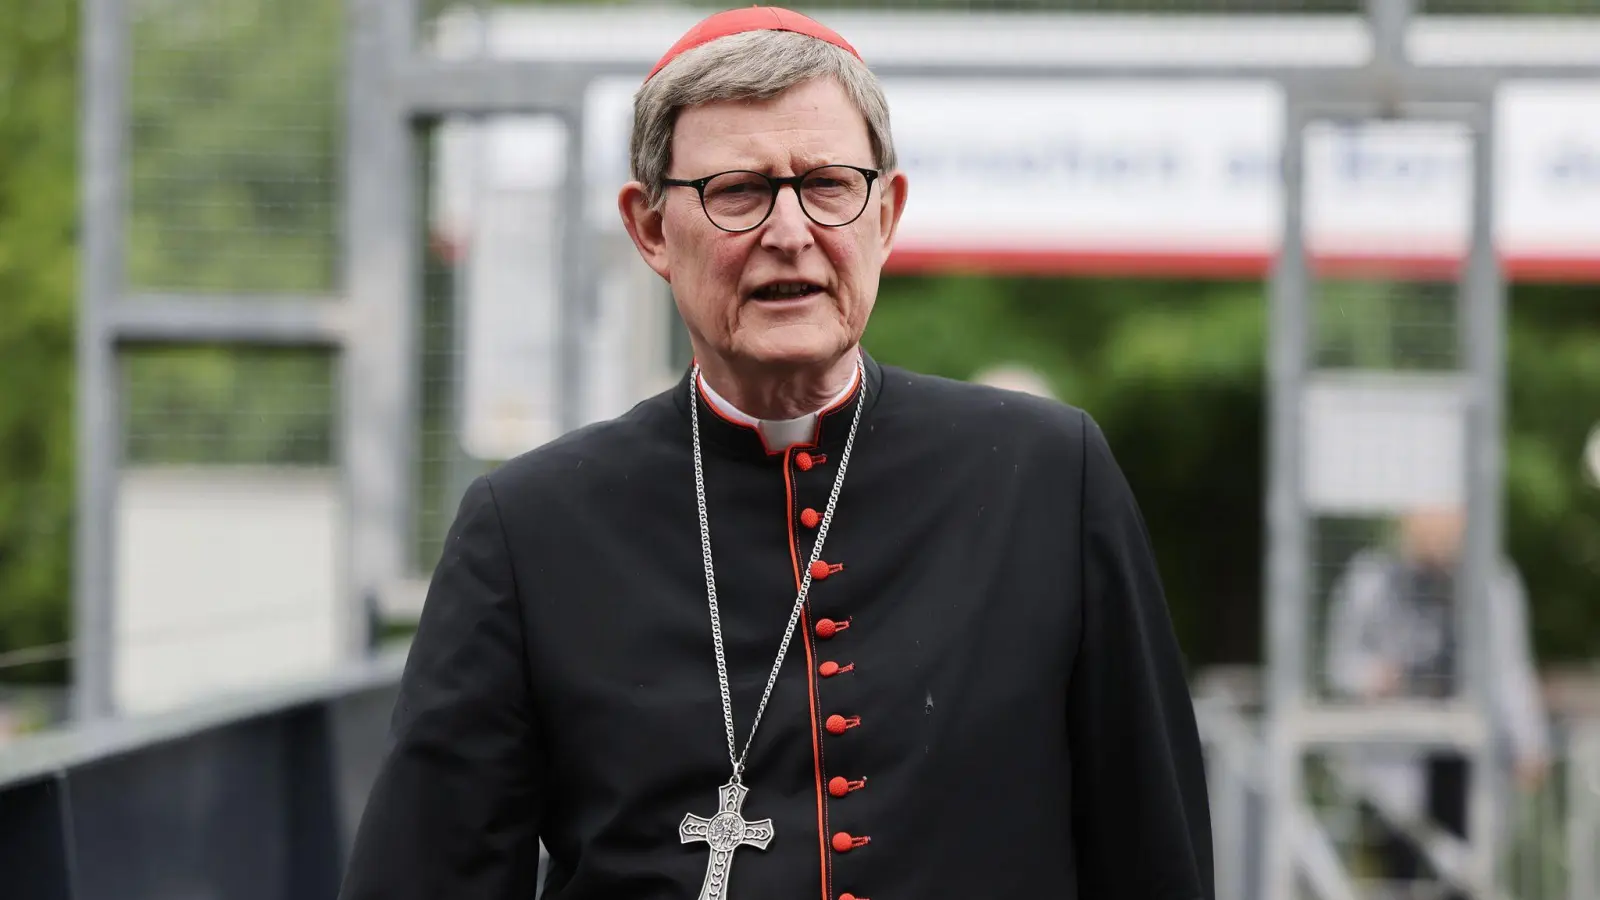 Steht weiter unter Druck: Der katholische Kardinal Rainer Maria Woelki. (Foto: Oliver Berg/dpa)